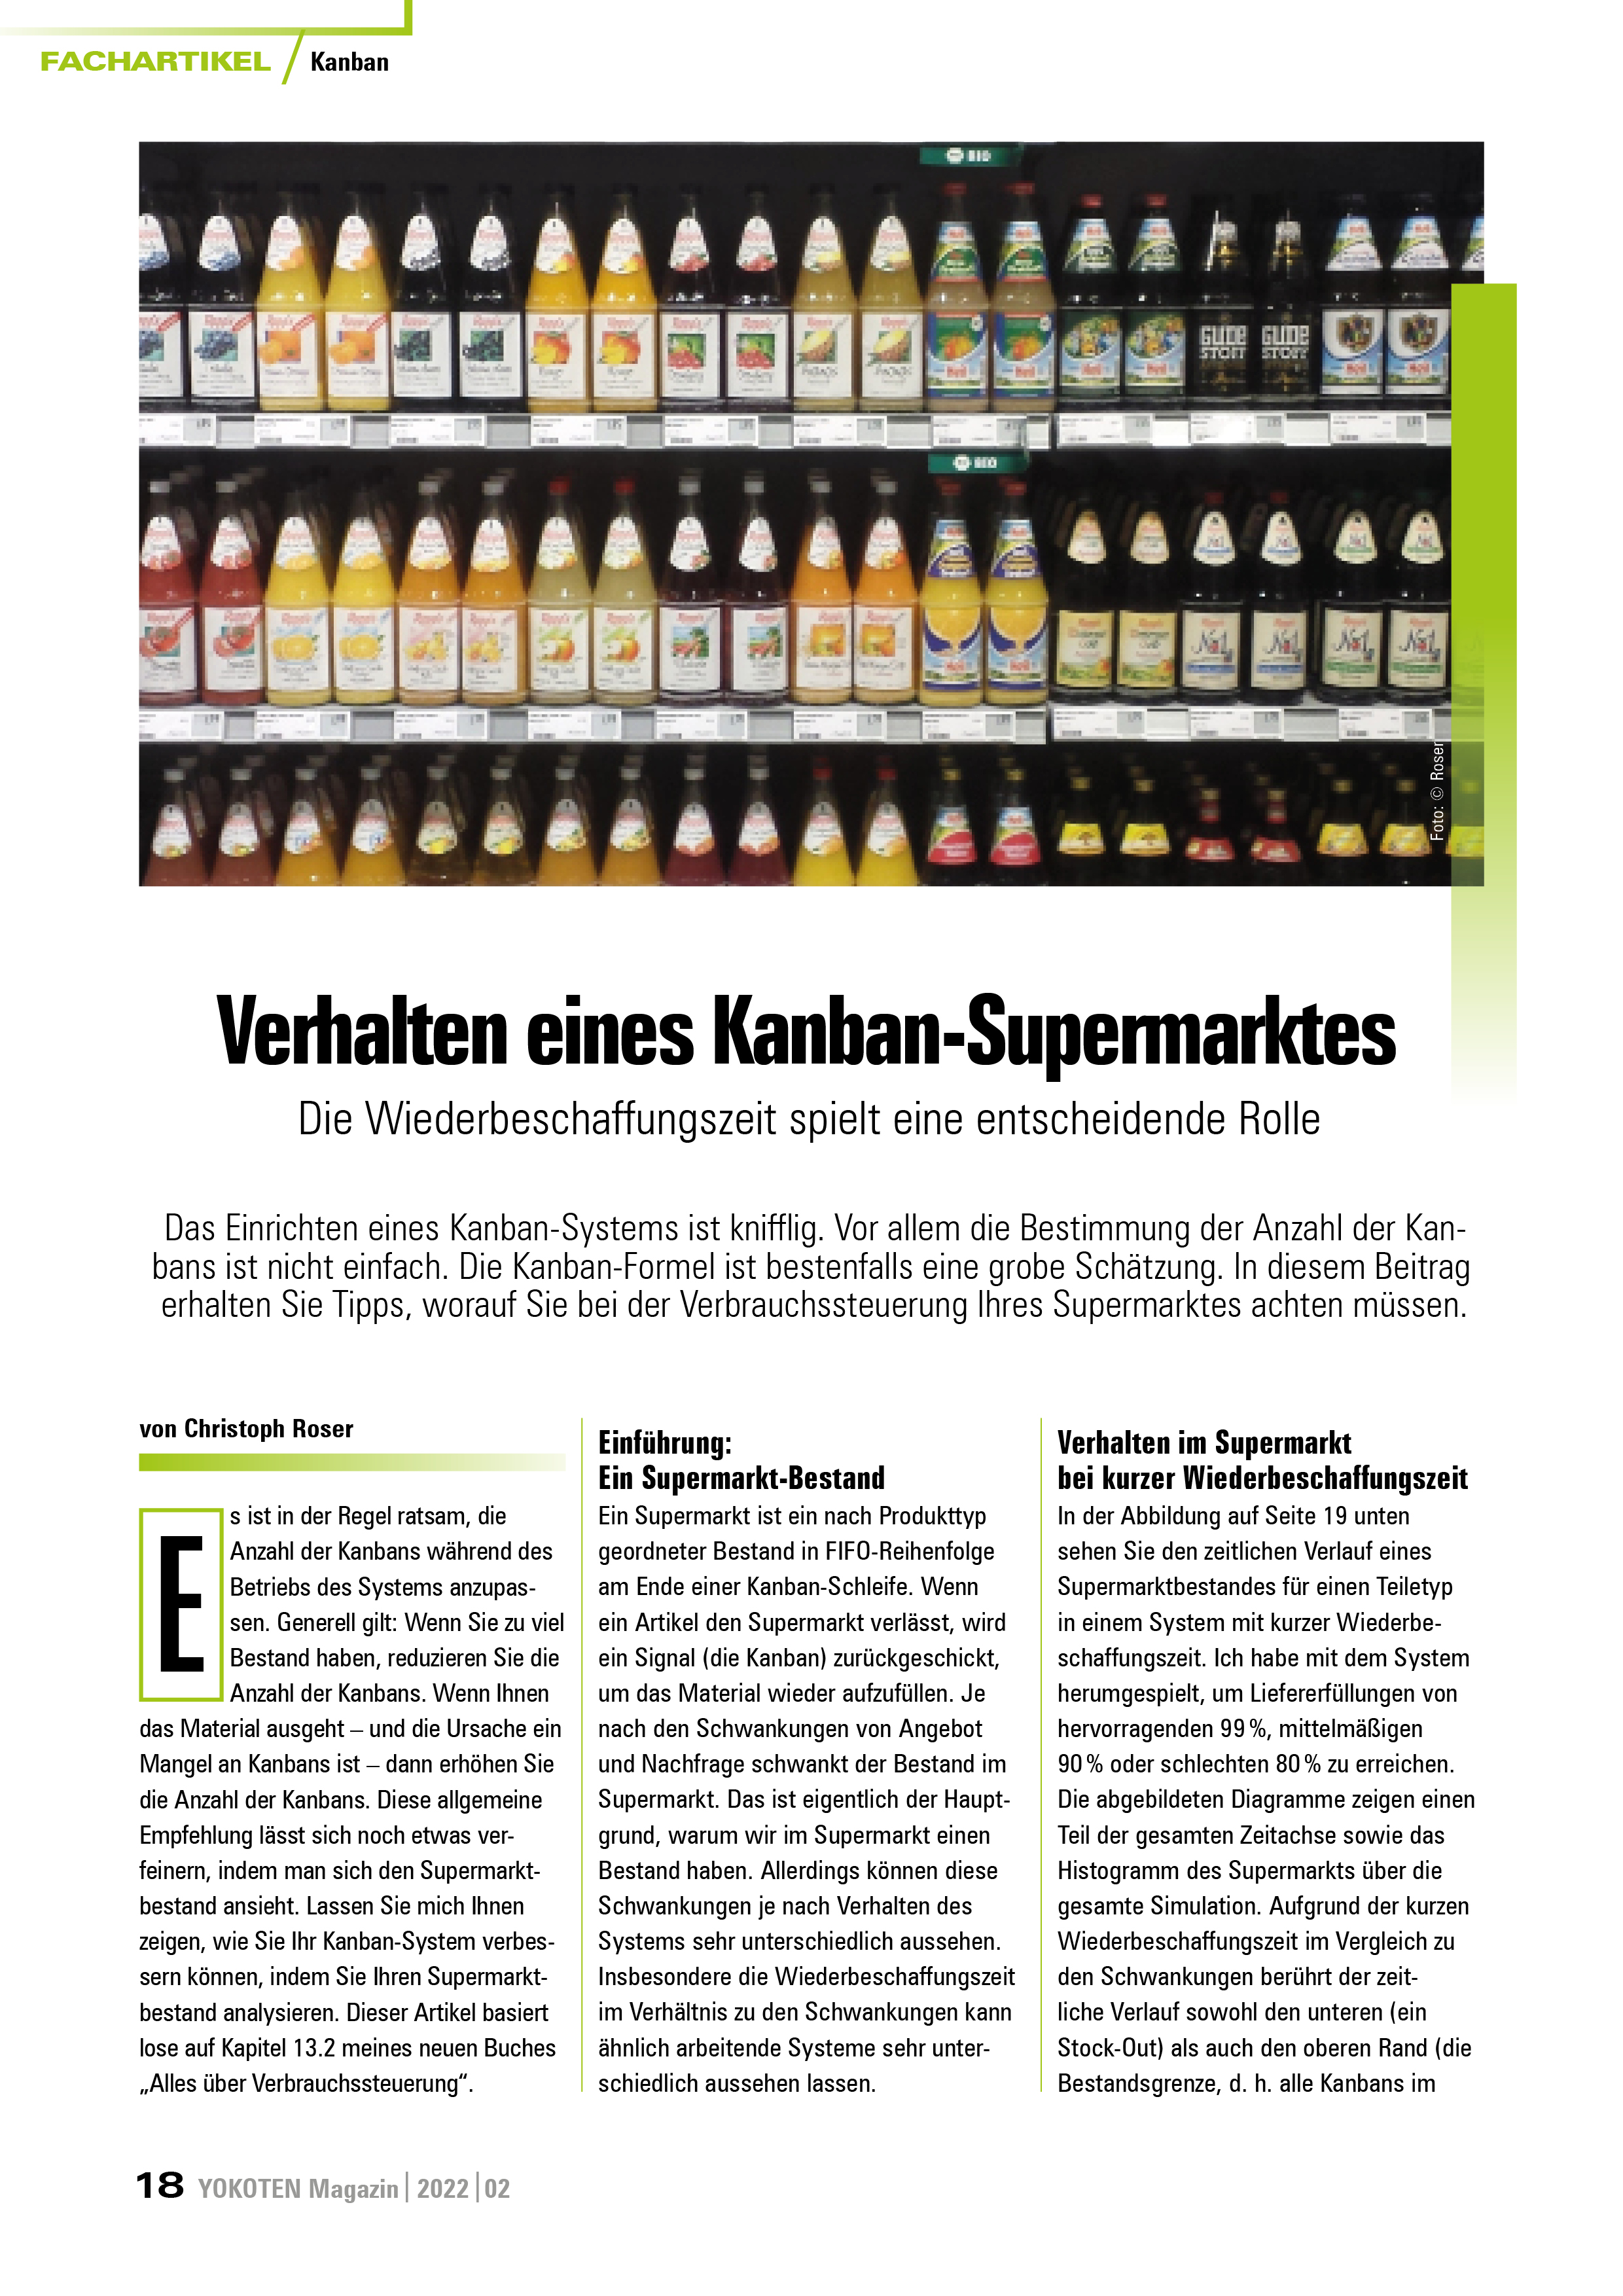 Verhalten eines Kanban-Supermarktes - Artikel aus Fachmagazin YOKOTEN 2022-02